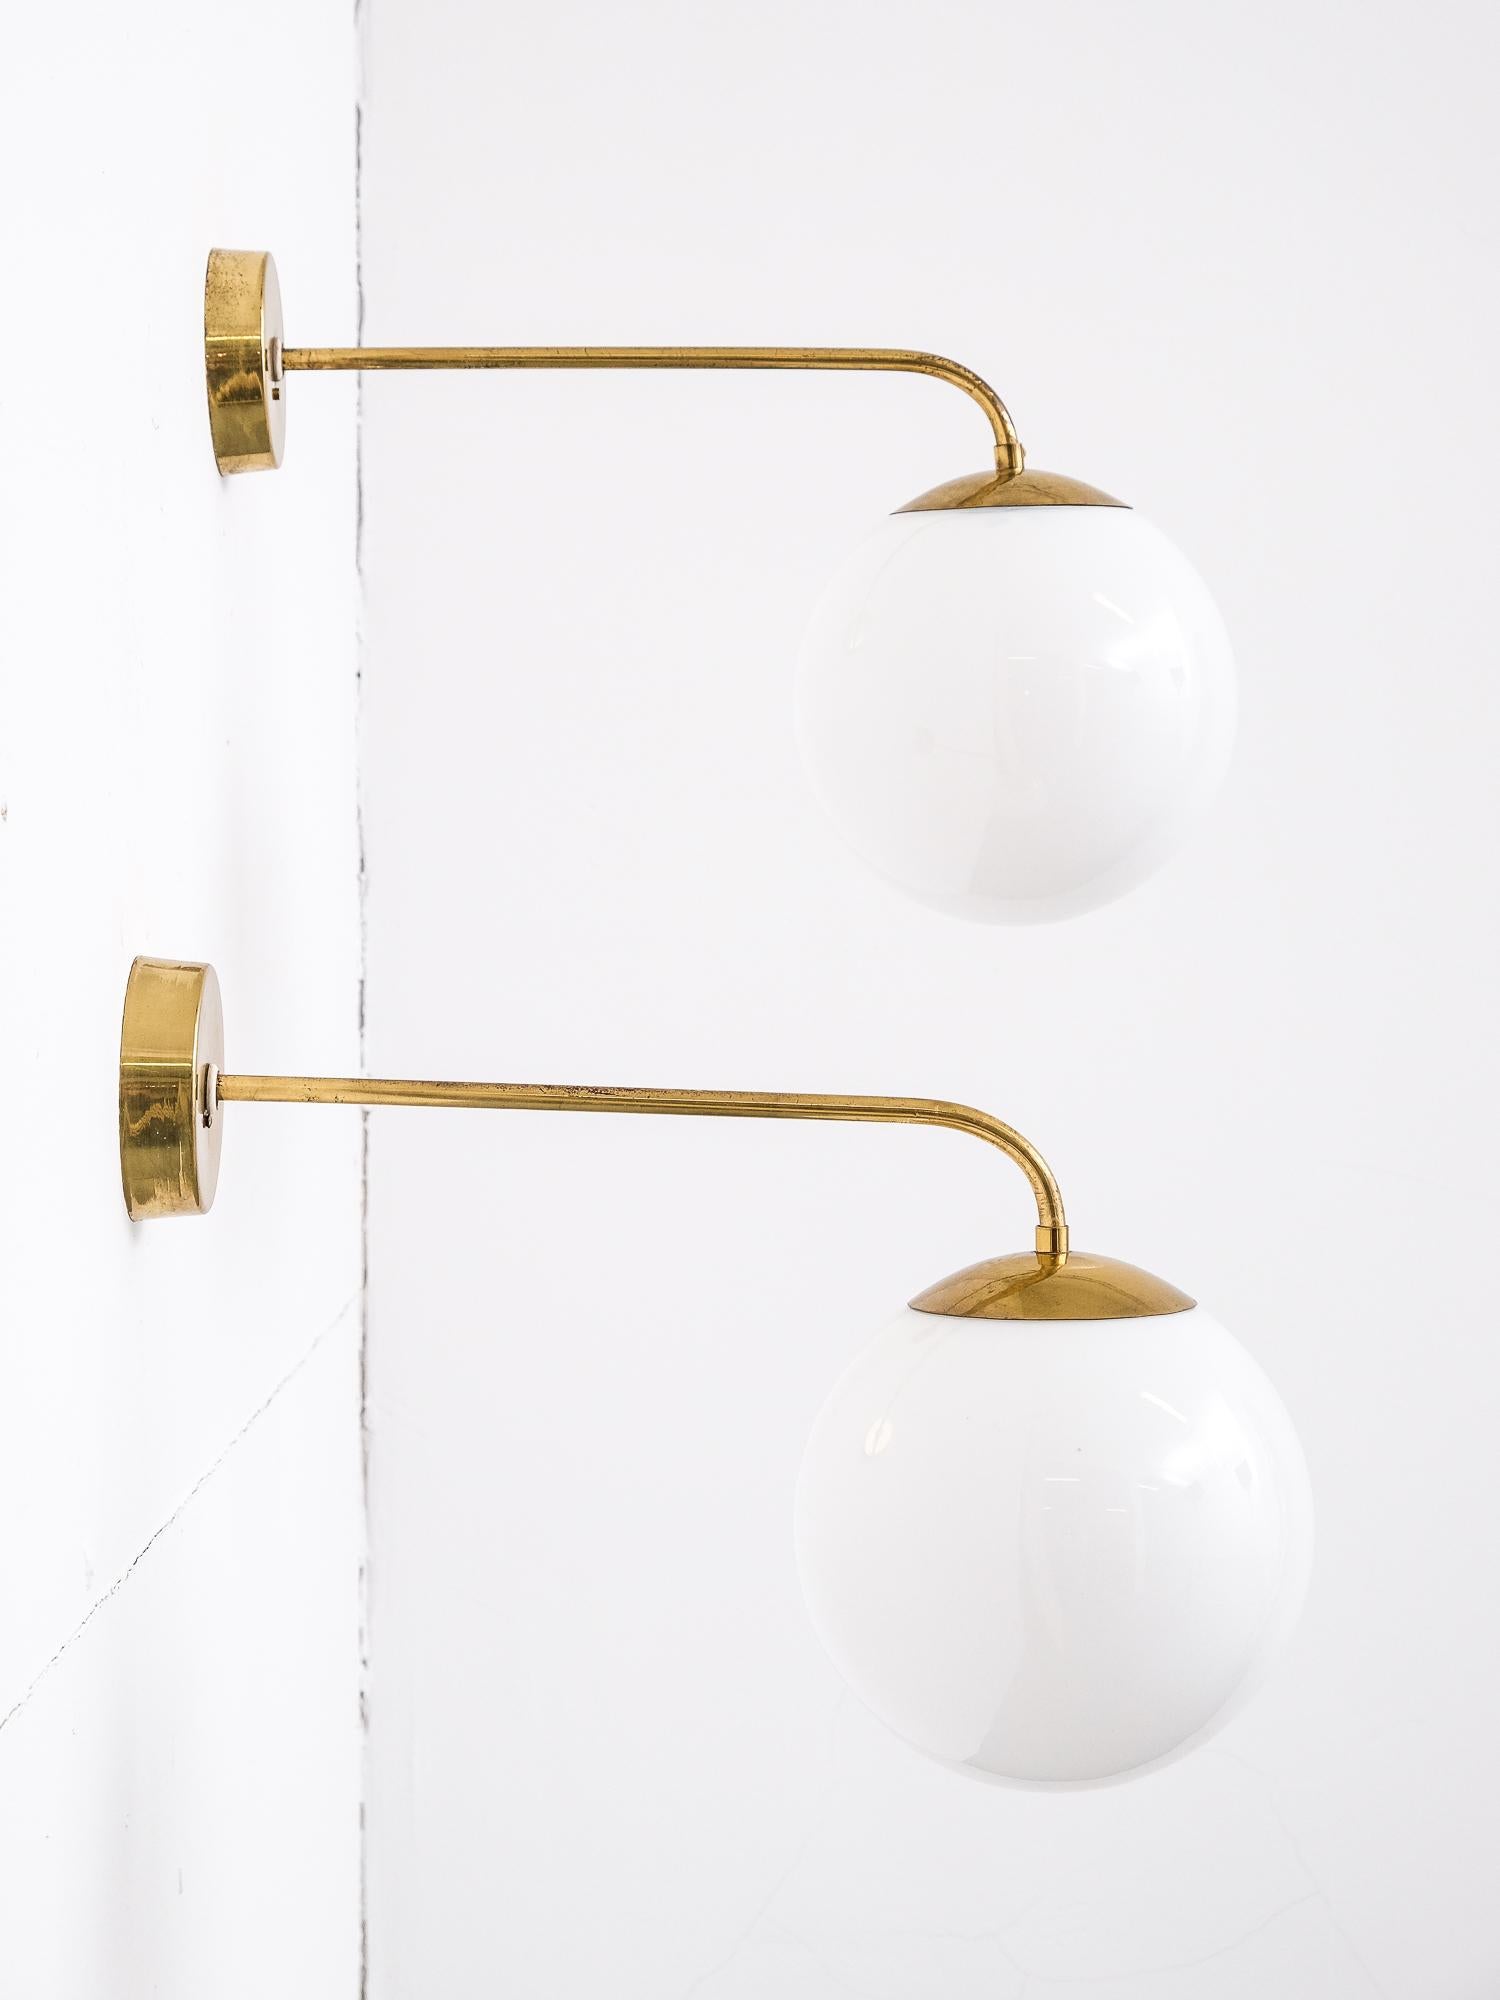 Scandinavian Modern Pair of 1940s Opaline Glass and Brass Wall Lamps by Idman, Finland